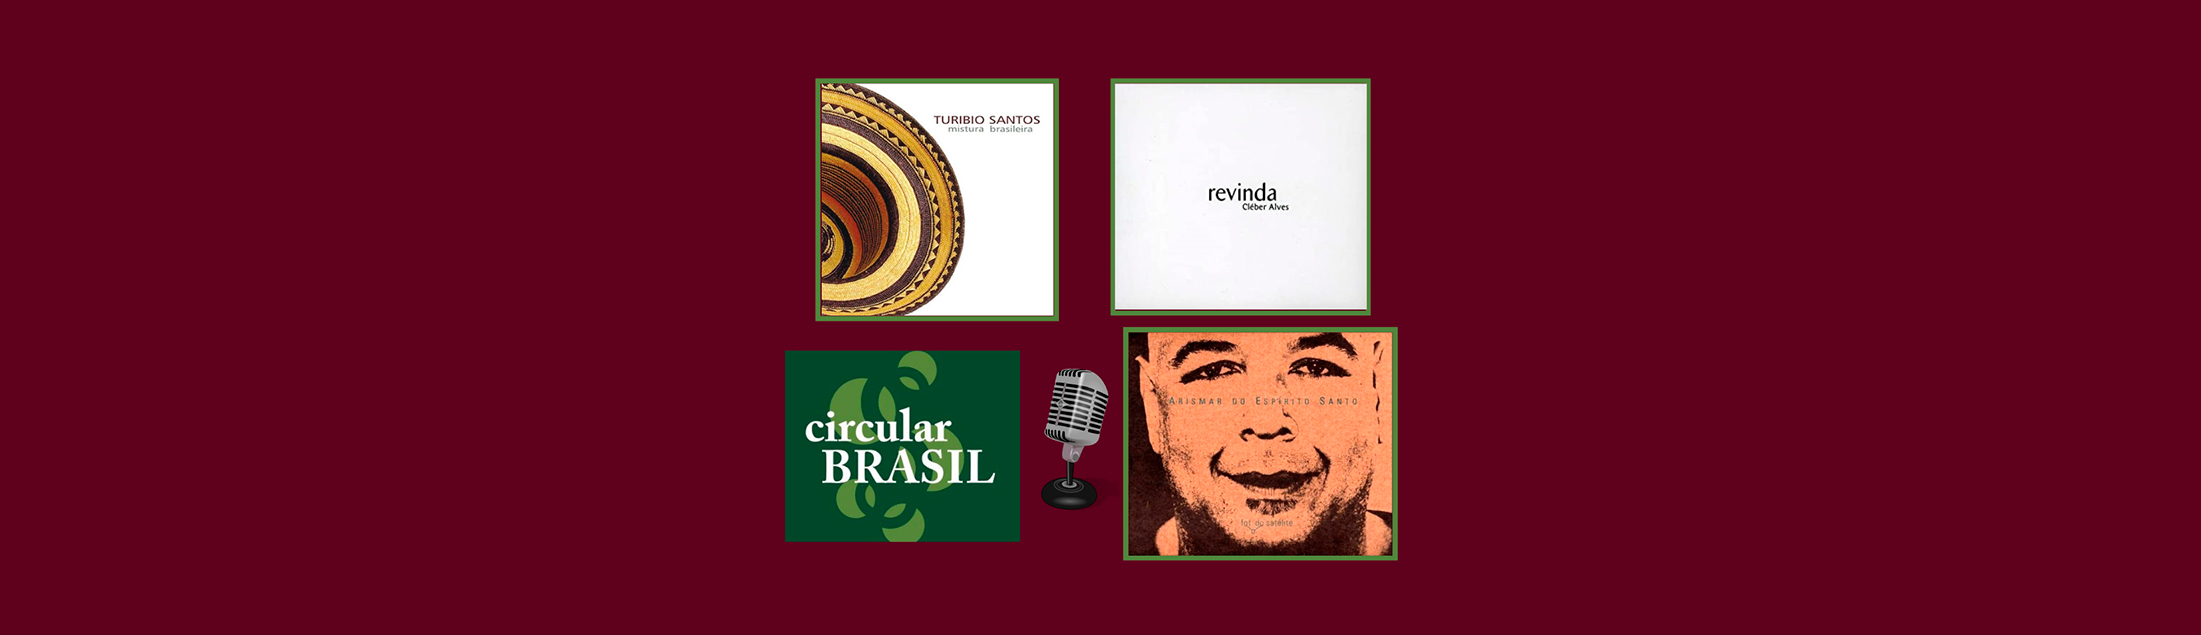 Talentos do violão, saxofone e contrabaixo no Circular Brasil